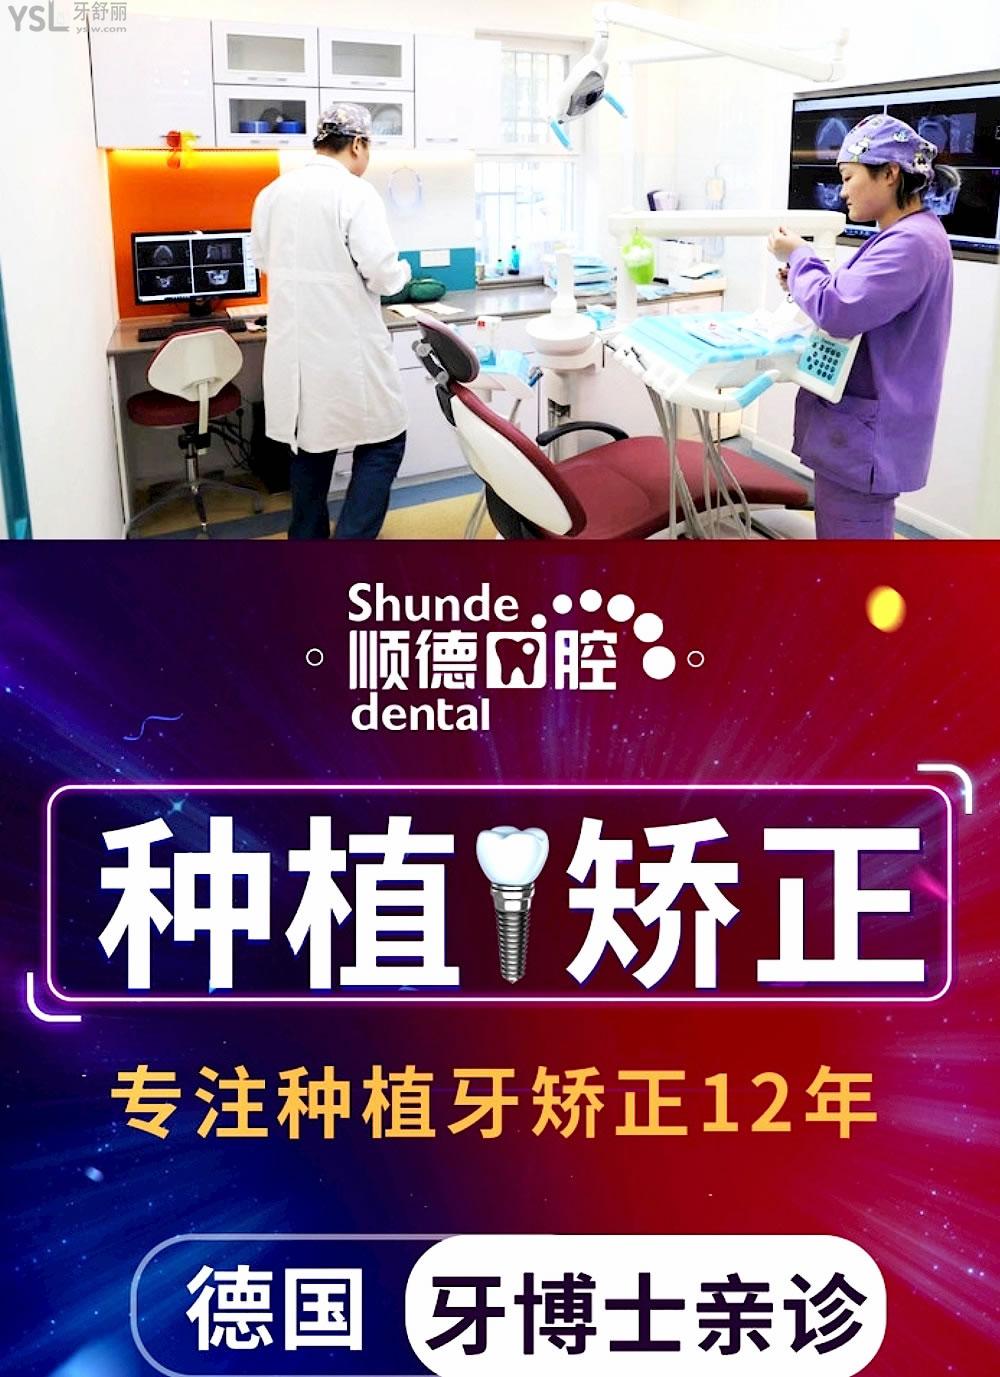 北京顺德口腔医院官网问价收费标准怎么样,2022年矫正种植牙齿价目表公示好又划算